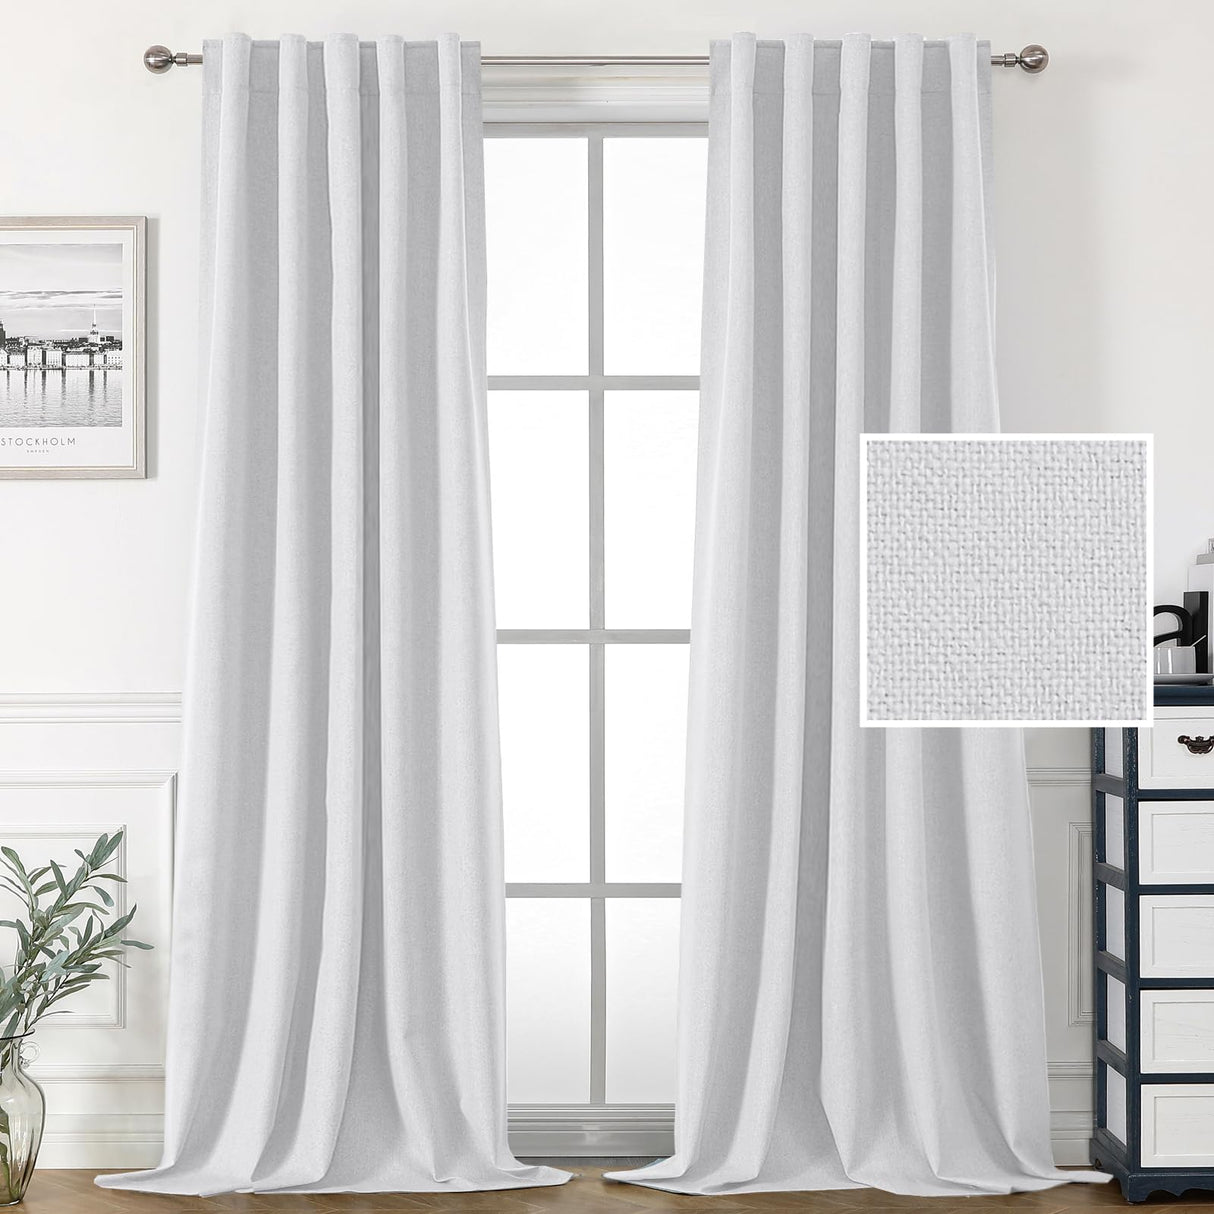 PrimeBeau 100% Blackout Faux Linen Look Curtains, Set of 2 Panels